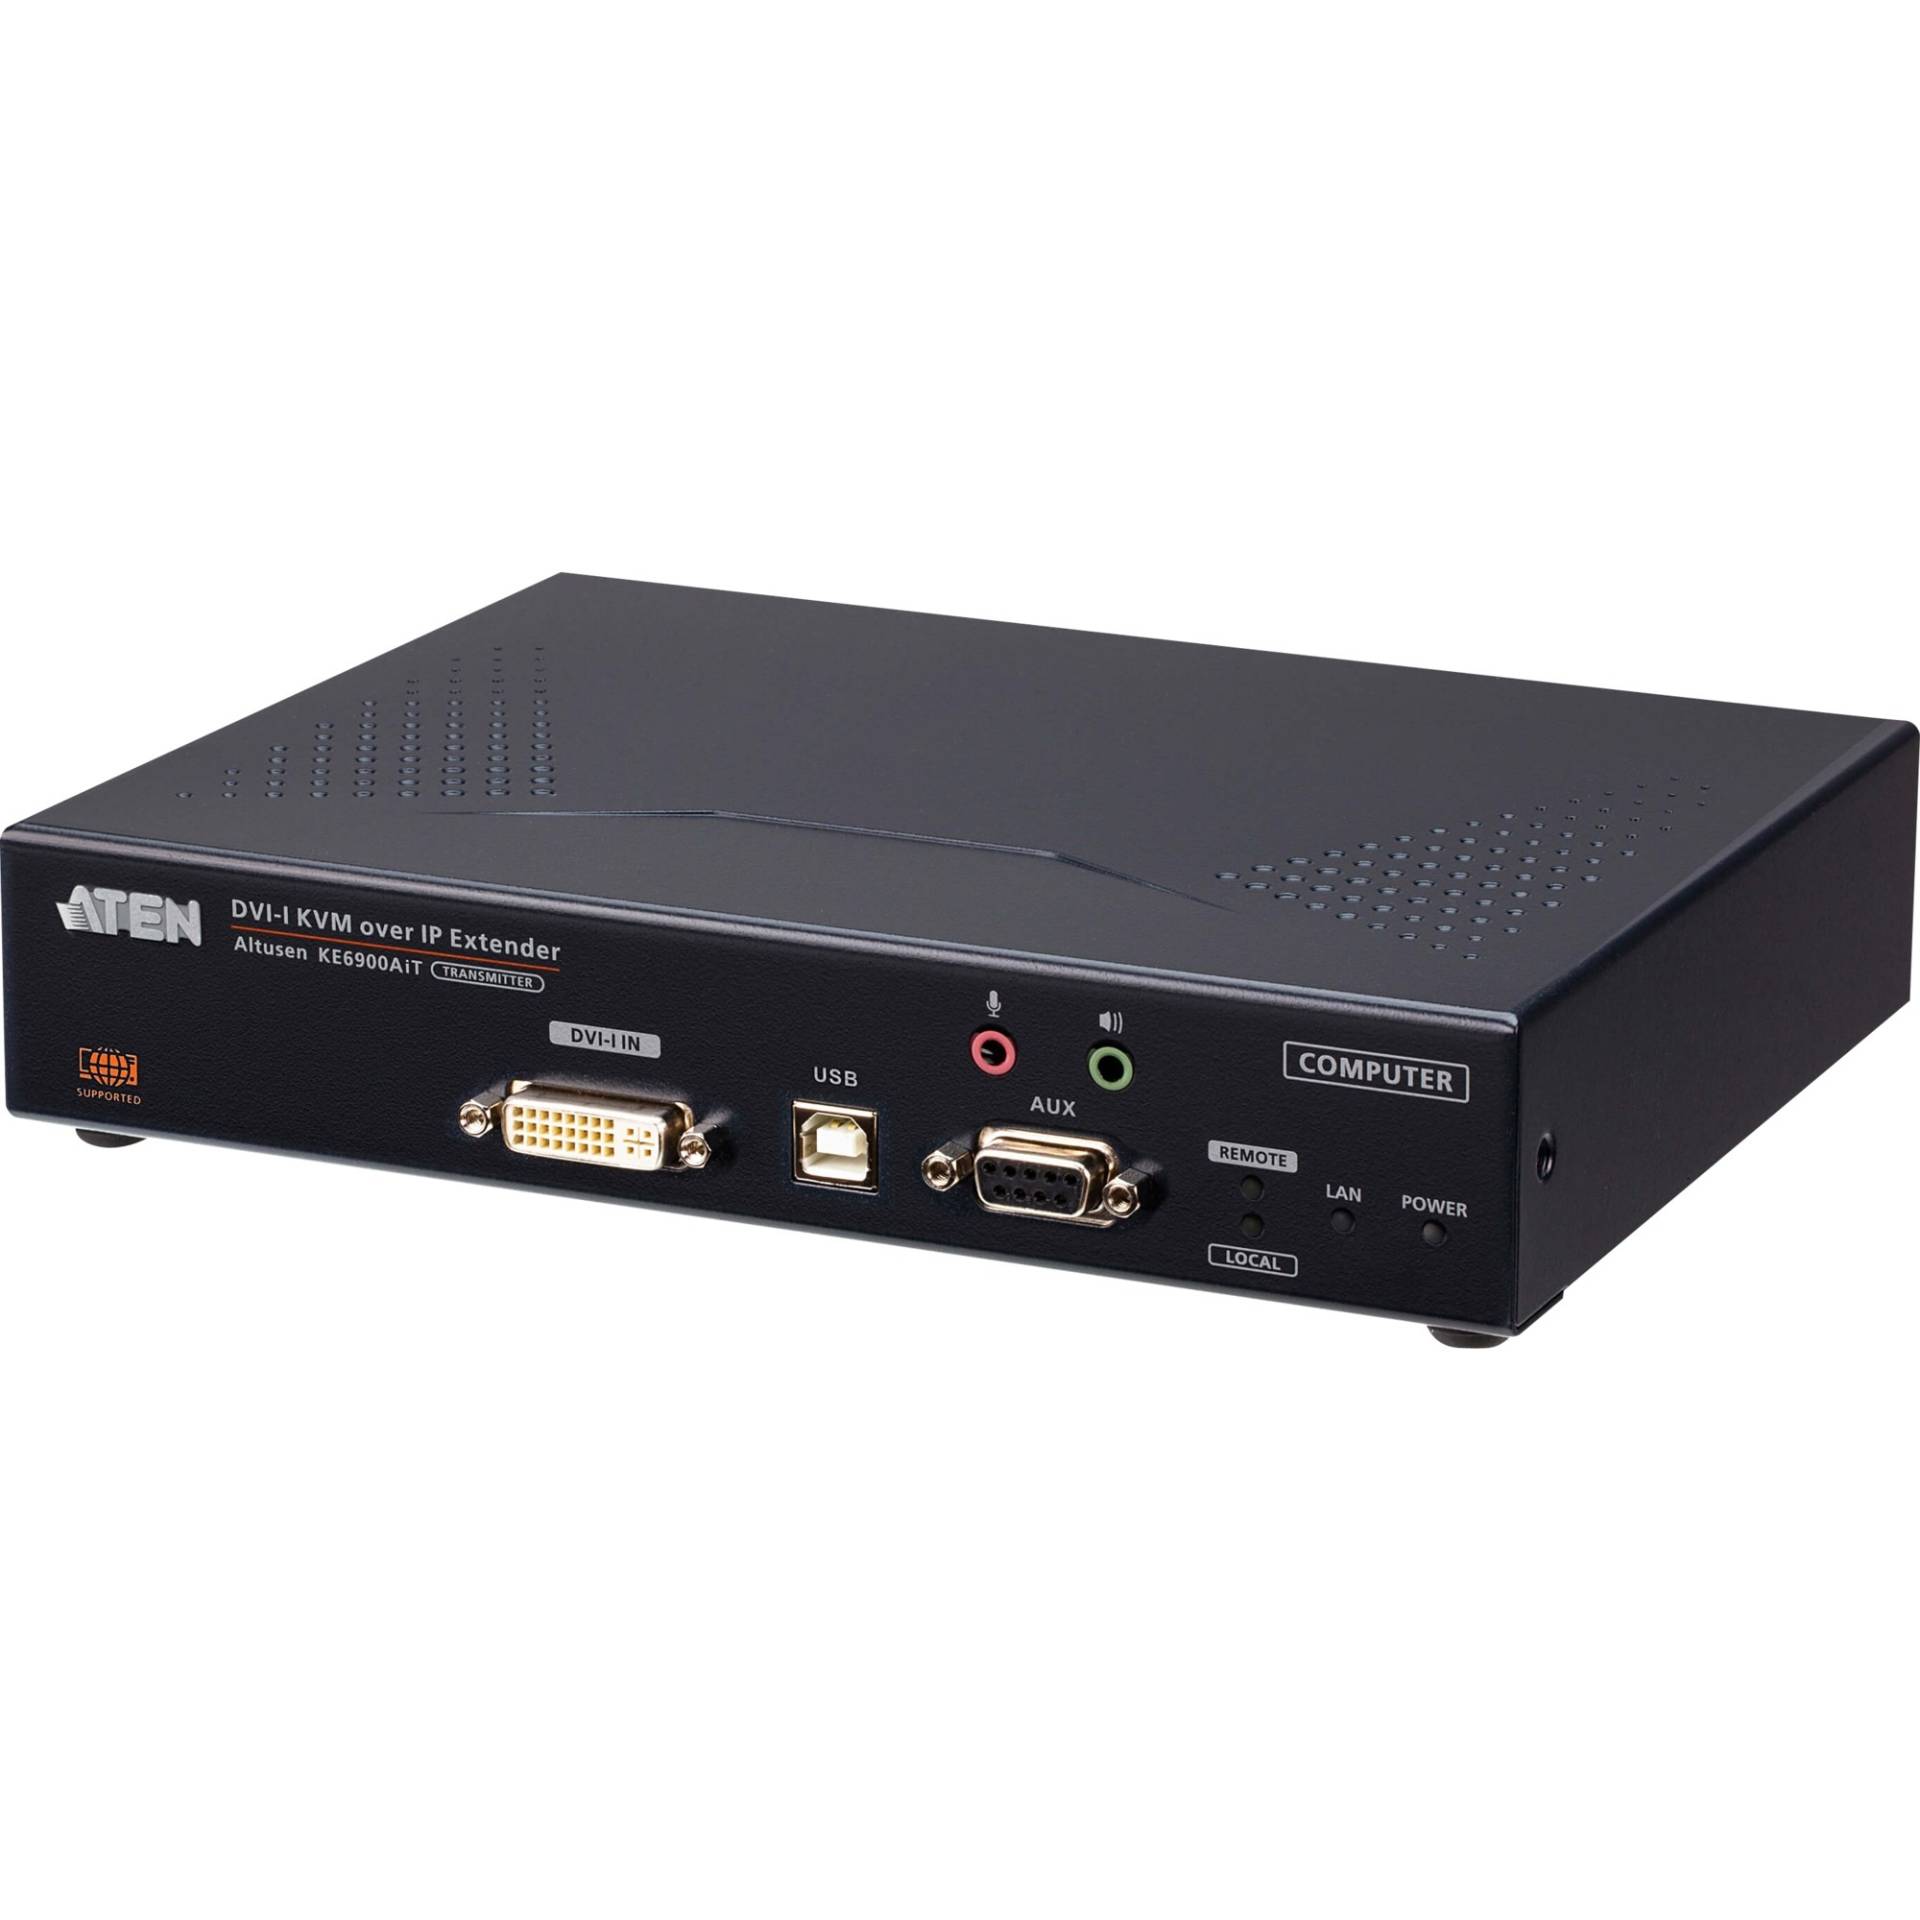 KE6900AiT DVI-I Einzel Display KVM over IP, DVI Erweiterung von Aten